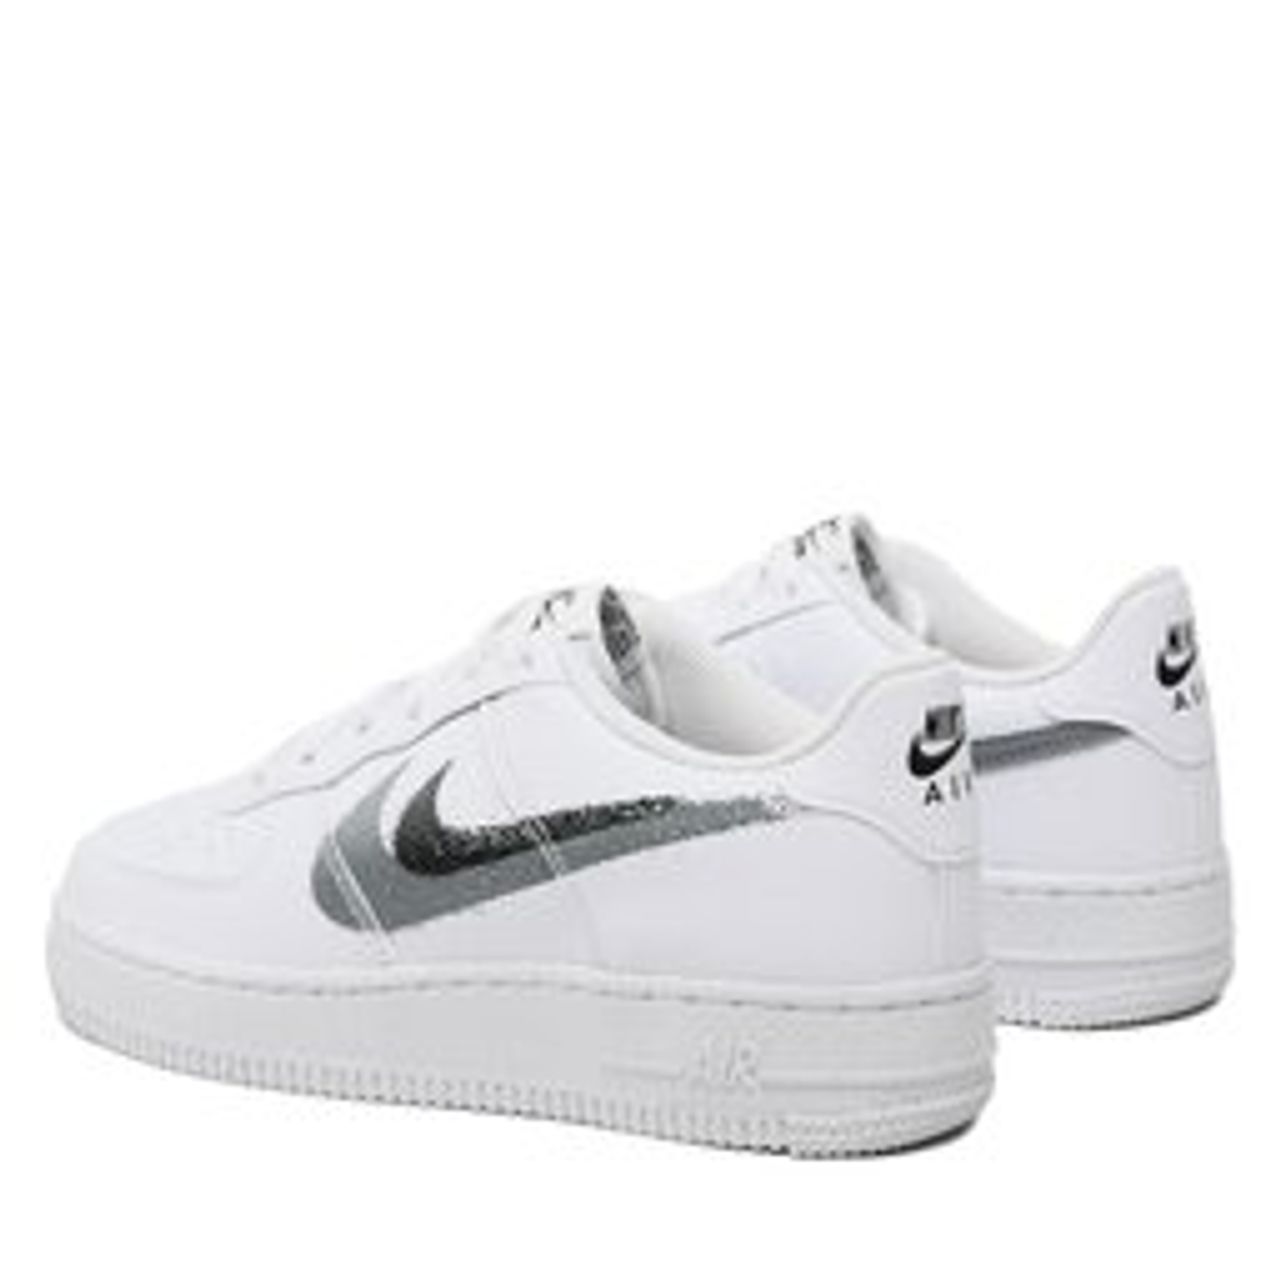 Schuhe Nike Air Force 1 Impact Nn Gs FD0694 100 White/Black/Cool Grey